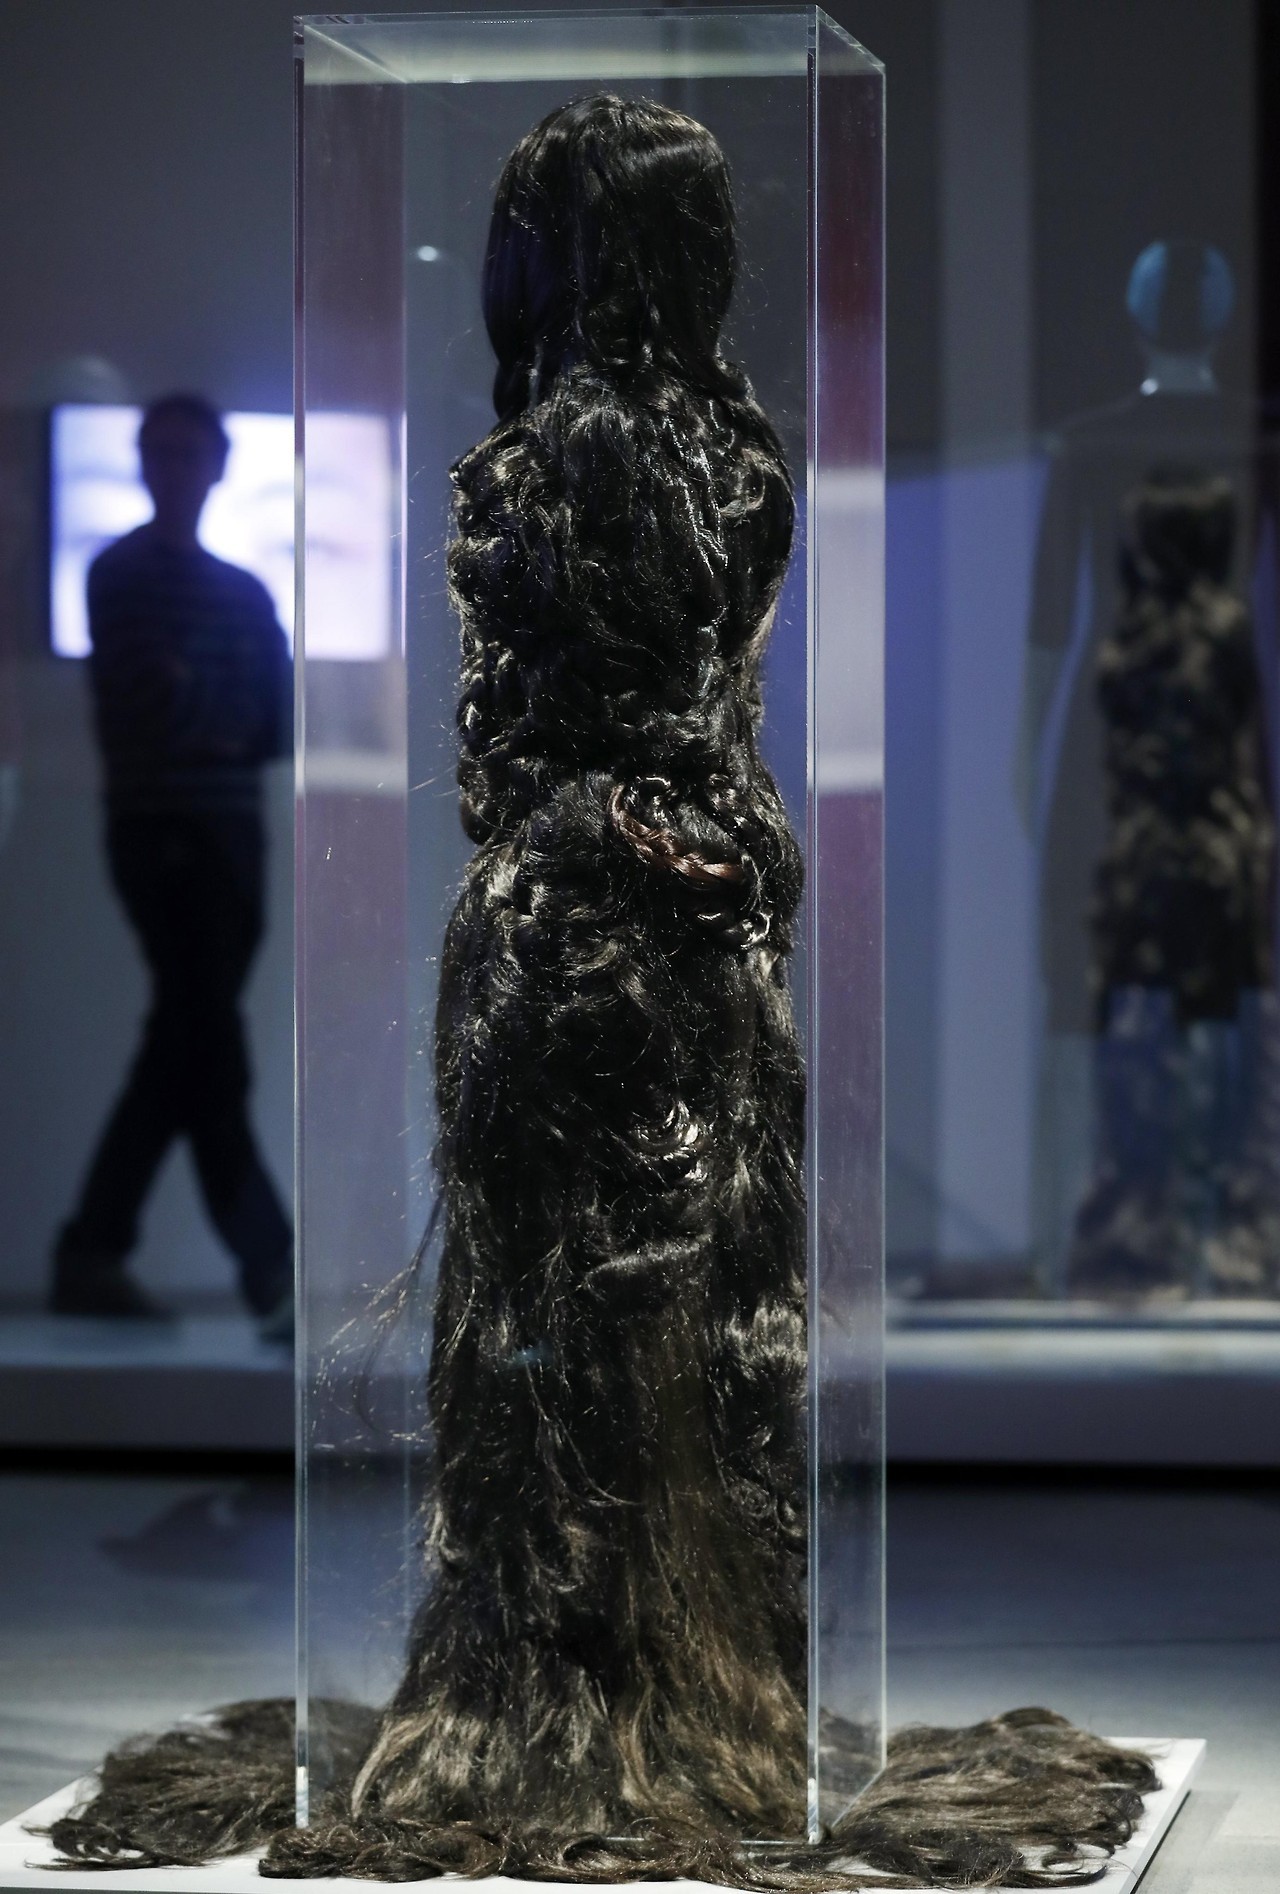 “CHERCHEZ LA FEMME: Wig, Burqa, Wimple” (en busca de la mujer: peluca, burka, griñon) en el Museo Judío de Berlín, Alemania, es la exposición que muestra los motivos históricos y religiosos de las mujeres para cubrirse la cabeza tanto en el judaísmo...